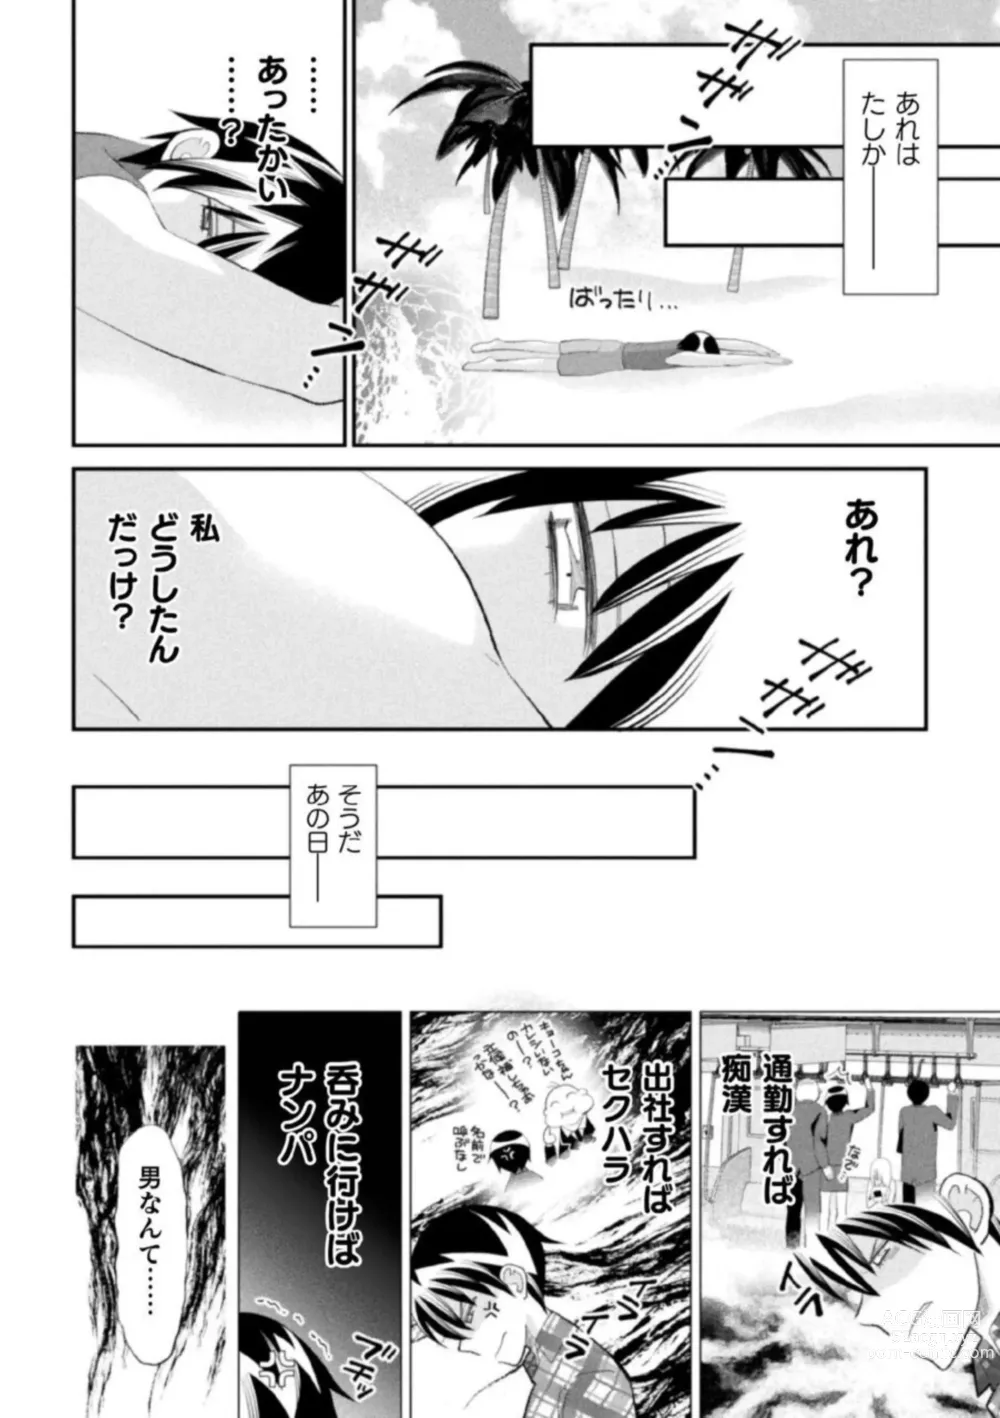 Page 10 of manga Shokora Shukureansorojīshokorashukureansorojī Docchi ga Suki? Kireina o Nīsan ni Aisare Ecchi Vol.2